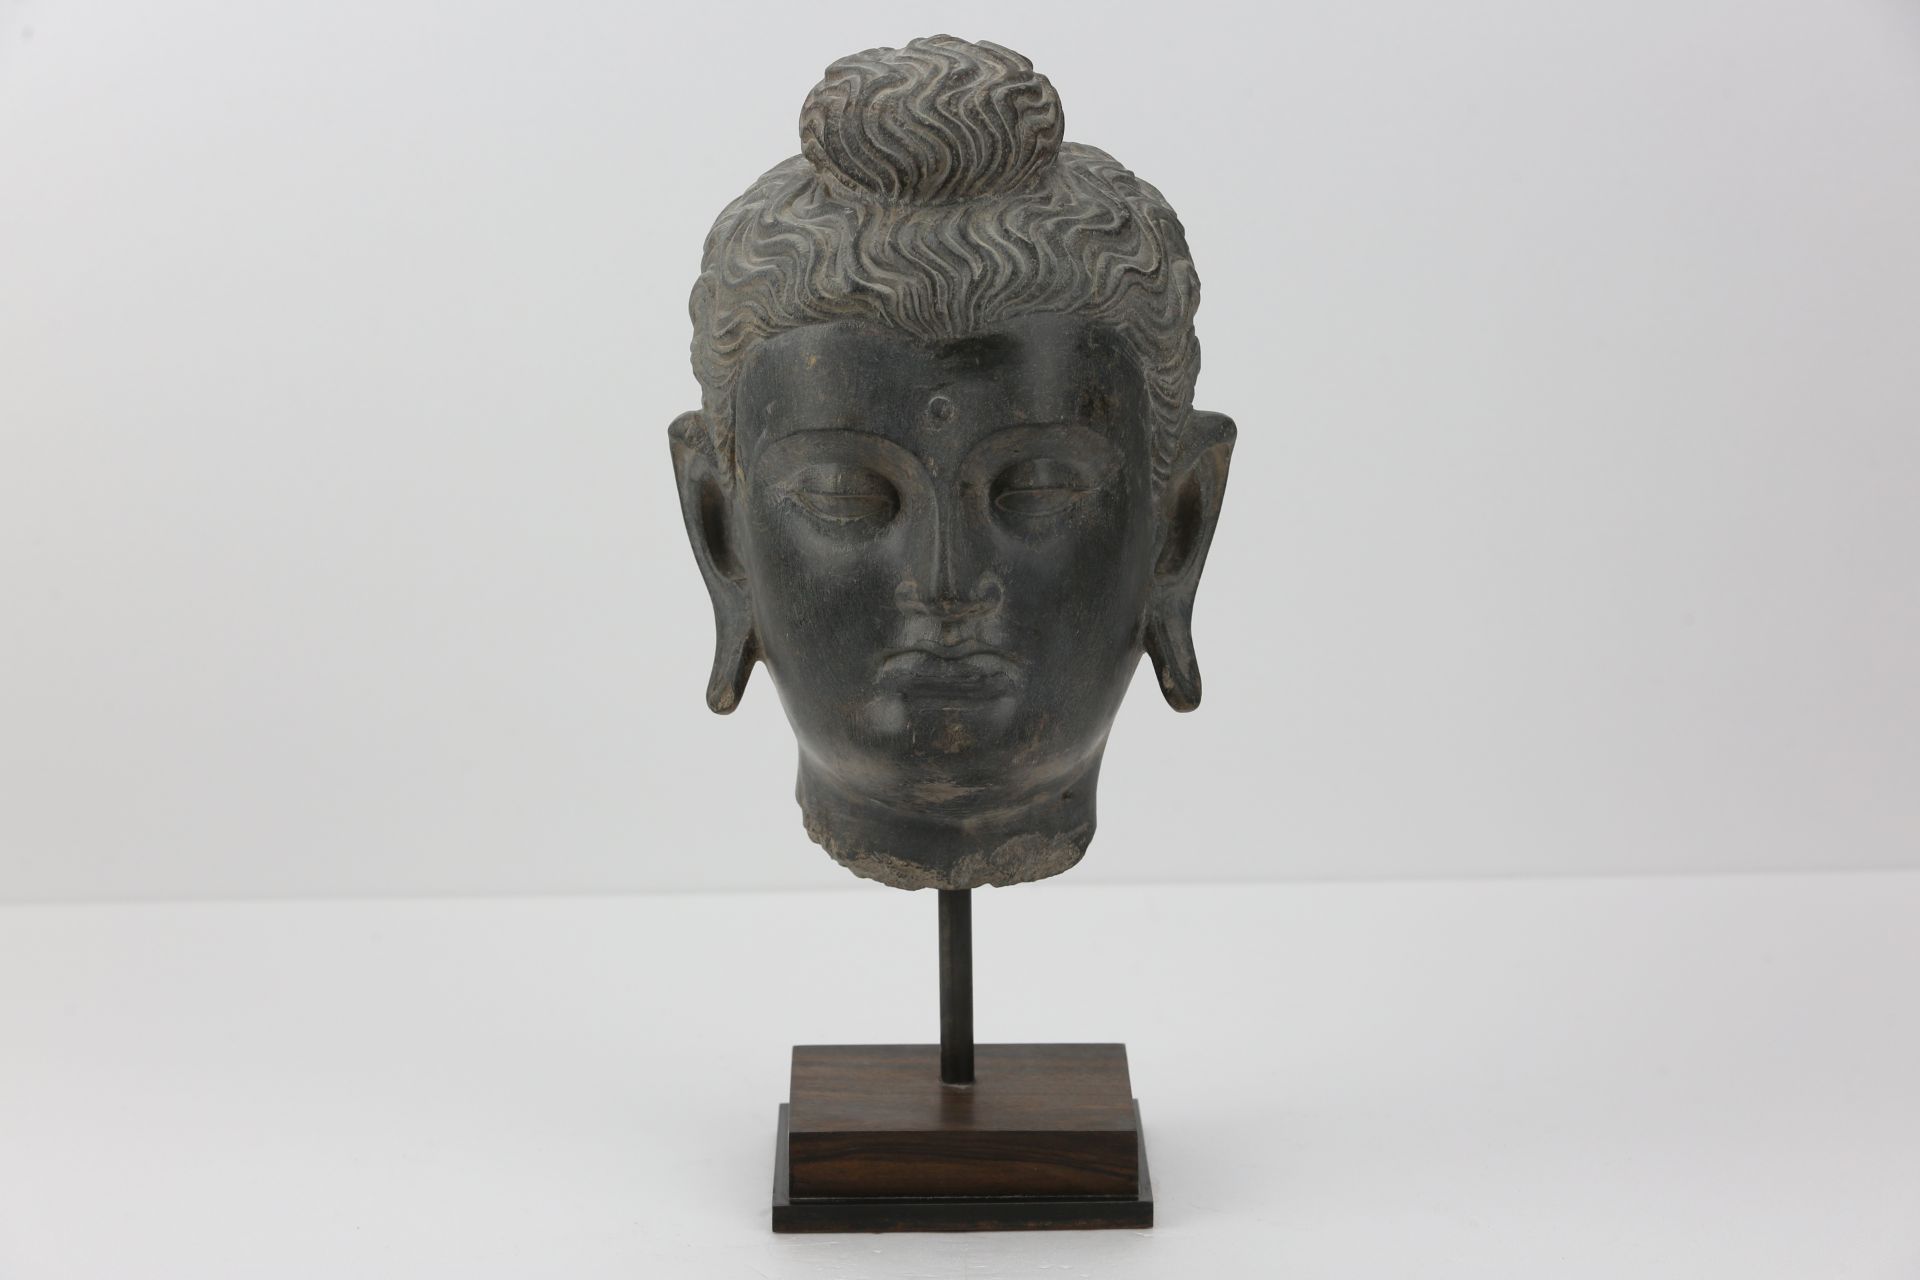 Tête de Boddhisattva marqué du troisième œil "Urna" au milieu du front , à la coiffure bouclée